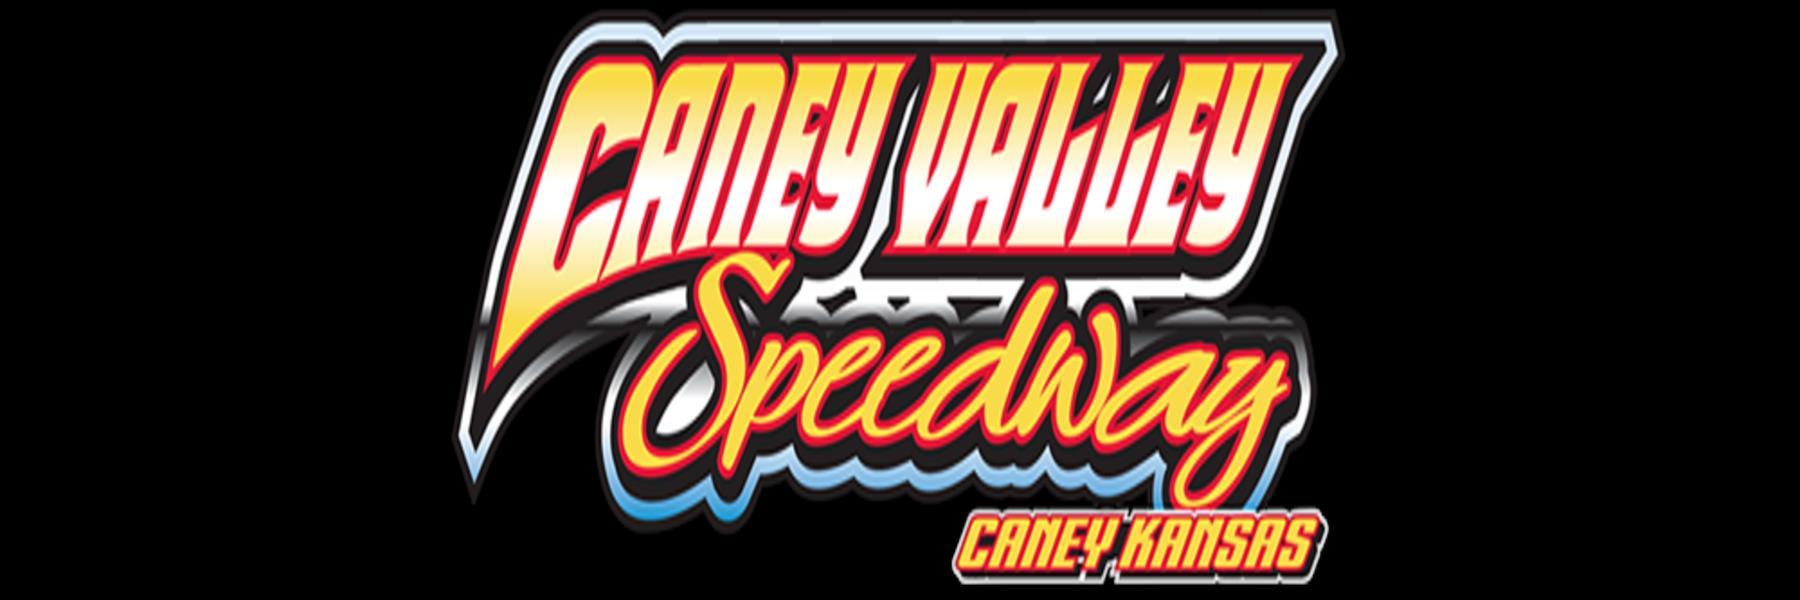 7/27/2022 - Caney Valley Speedway